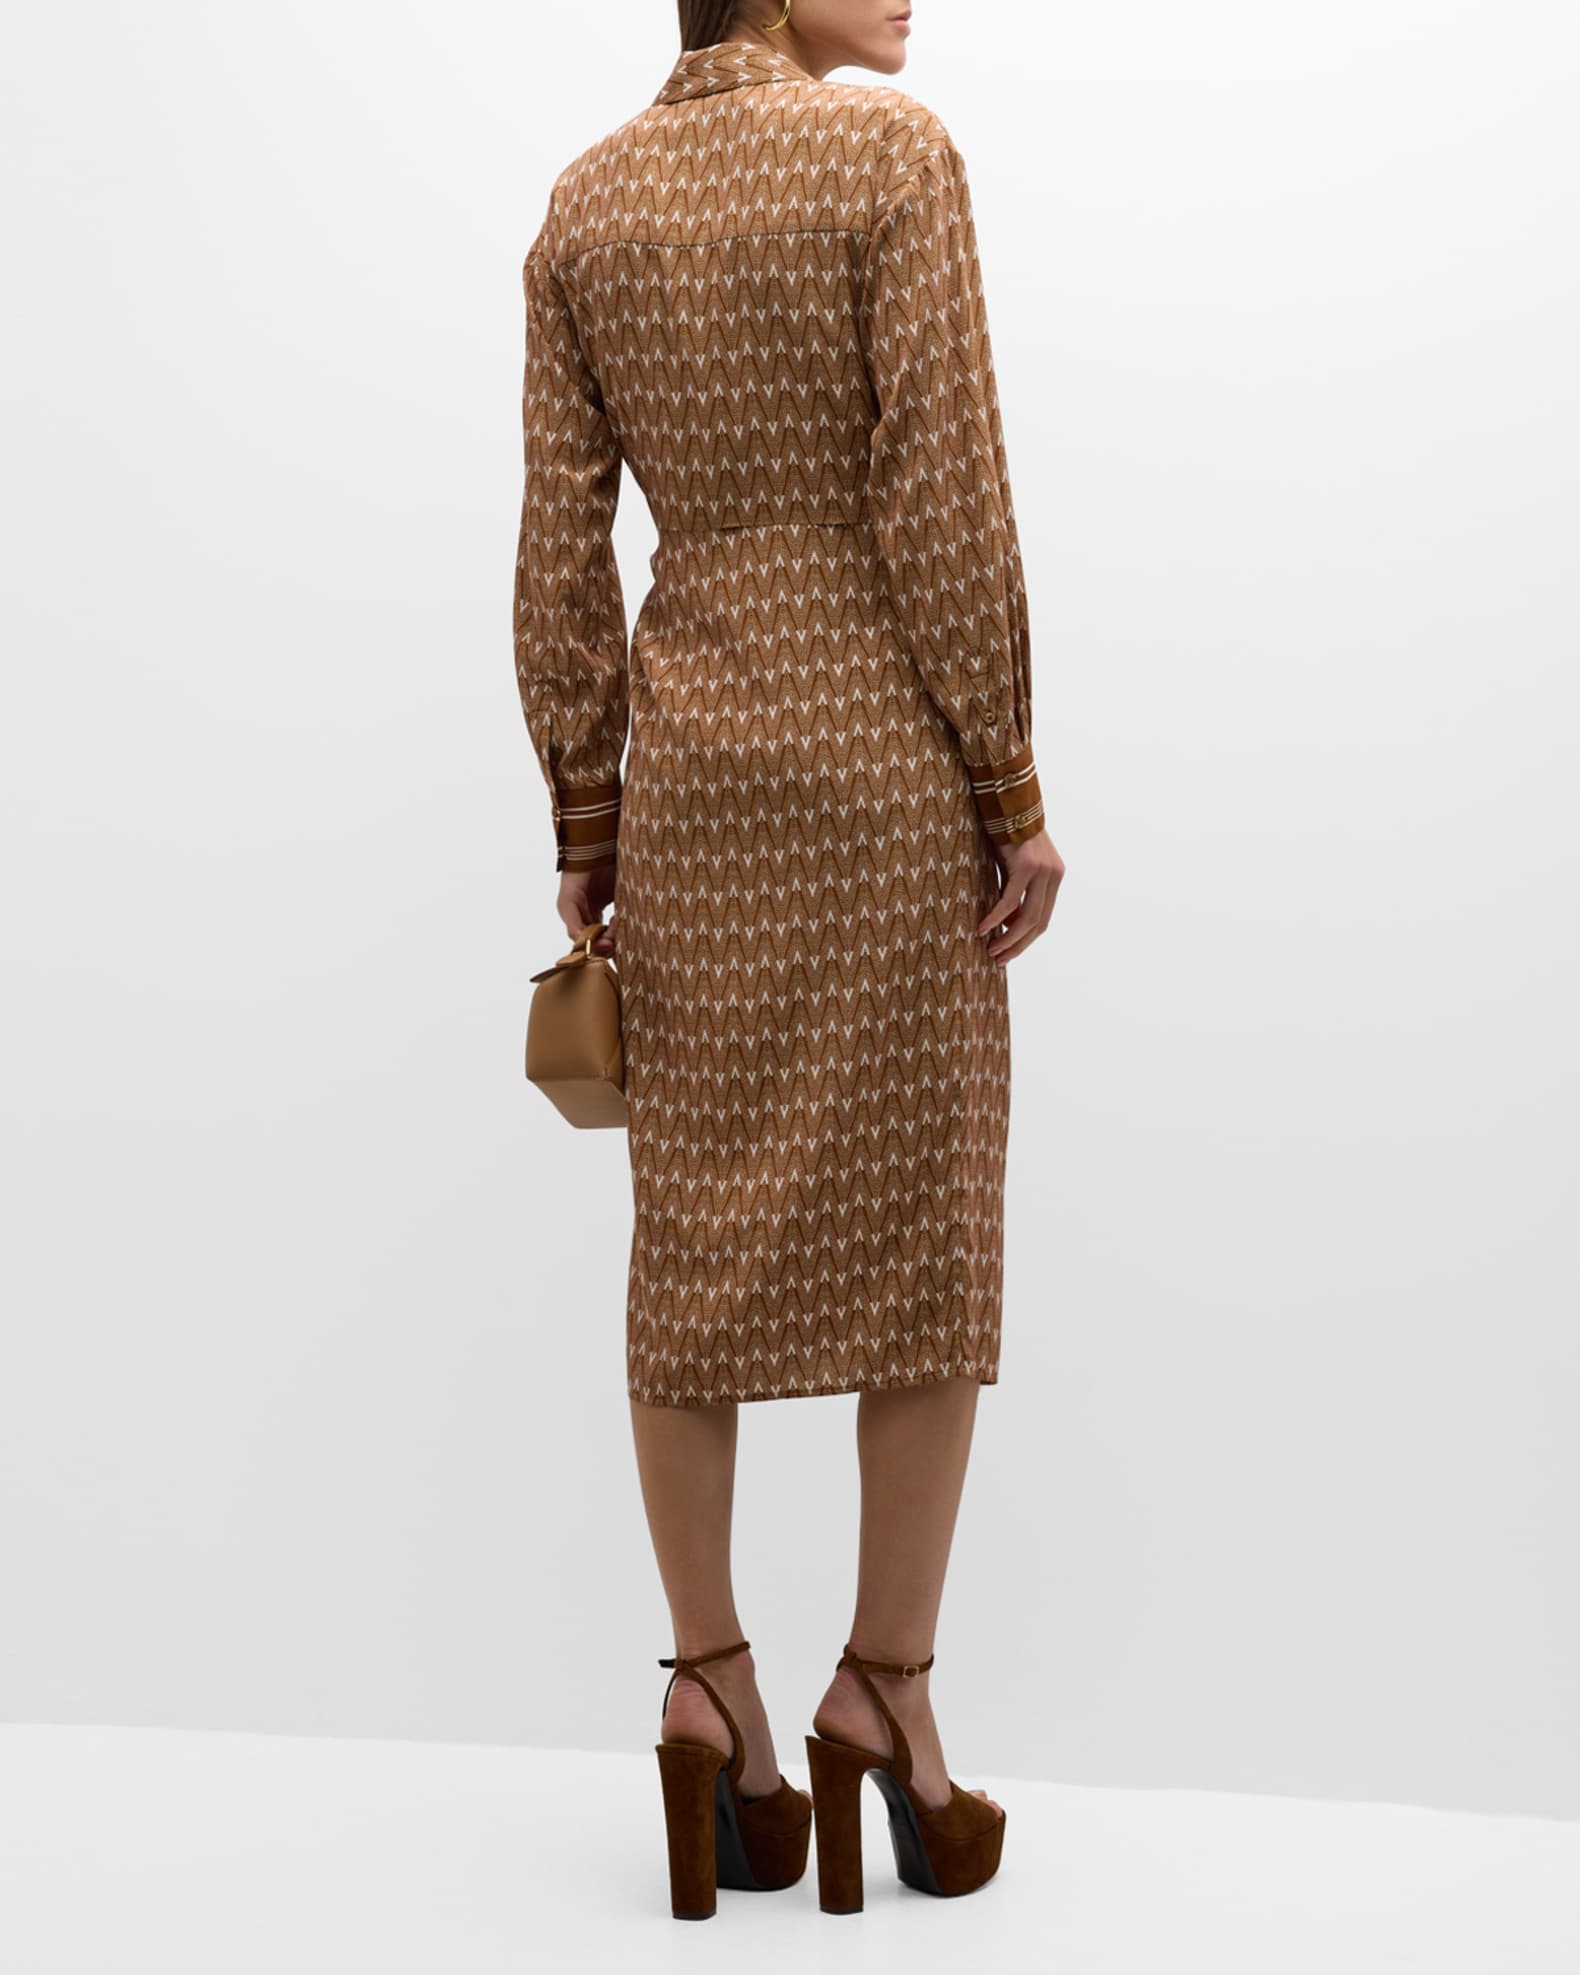 Leopard wrap dress and light brown suede heels, Edit by Lauren